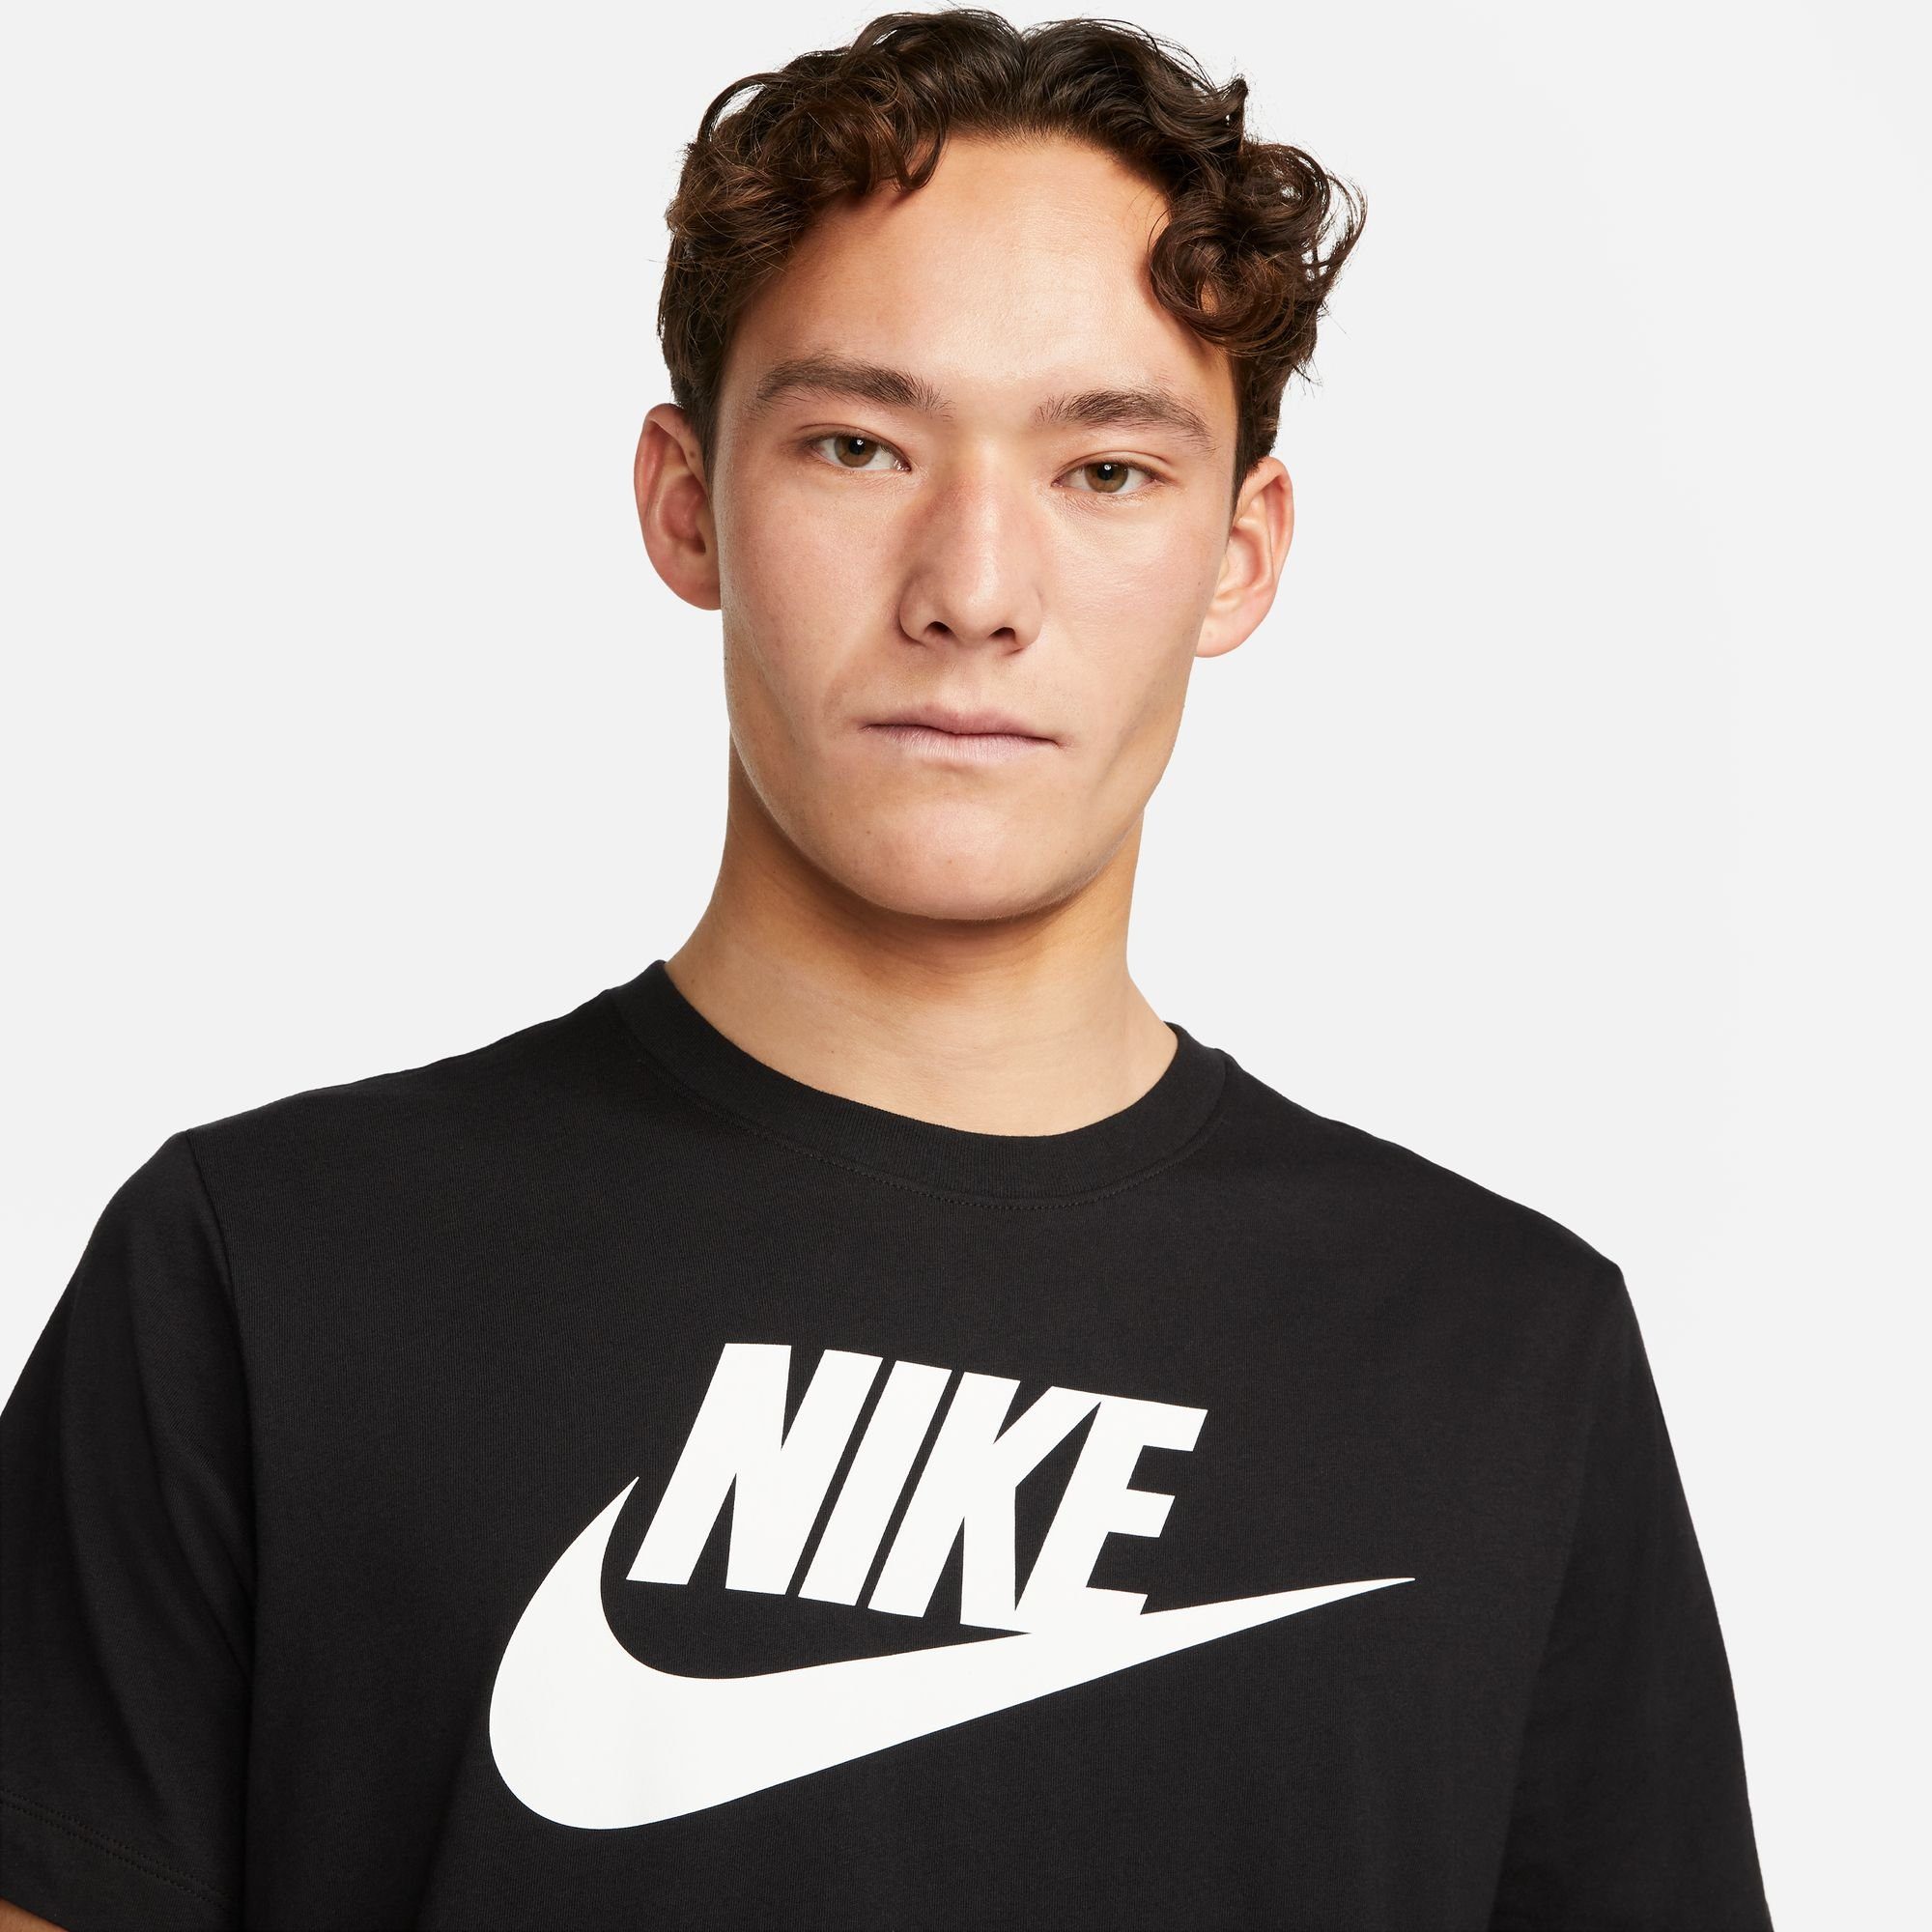 MEN'S Nike Sportswear schwarz T-SHIRT T-Shirt